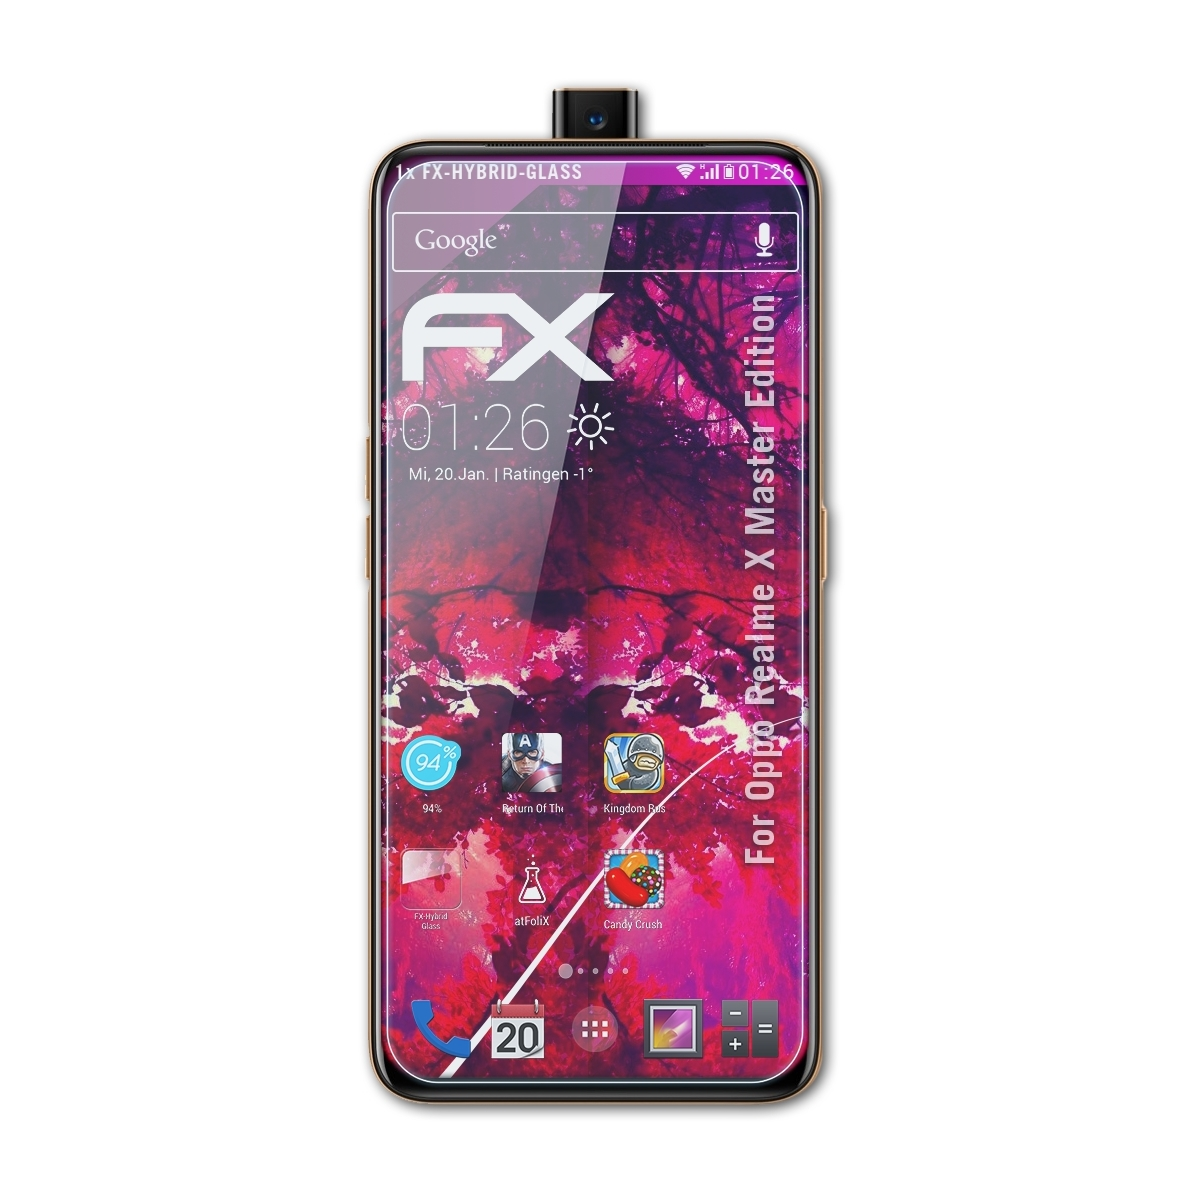 FX-Hybrid-Glass Master Realme Oppo X Edition) ATFOLIX Schutzglas(für